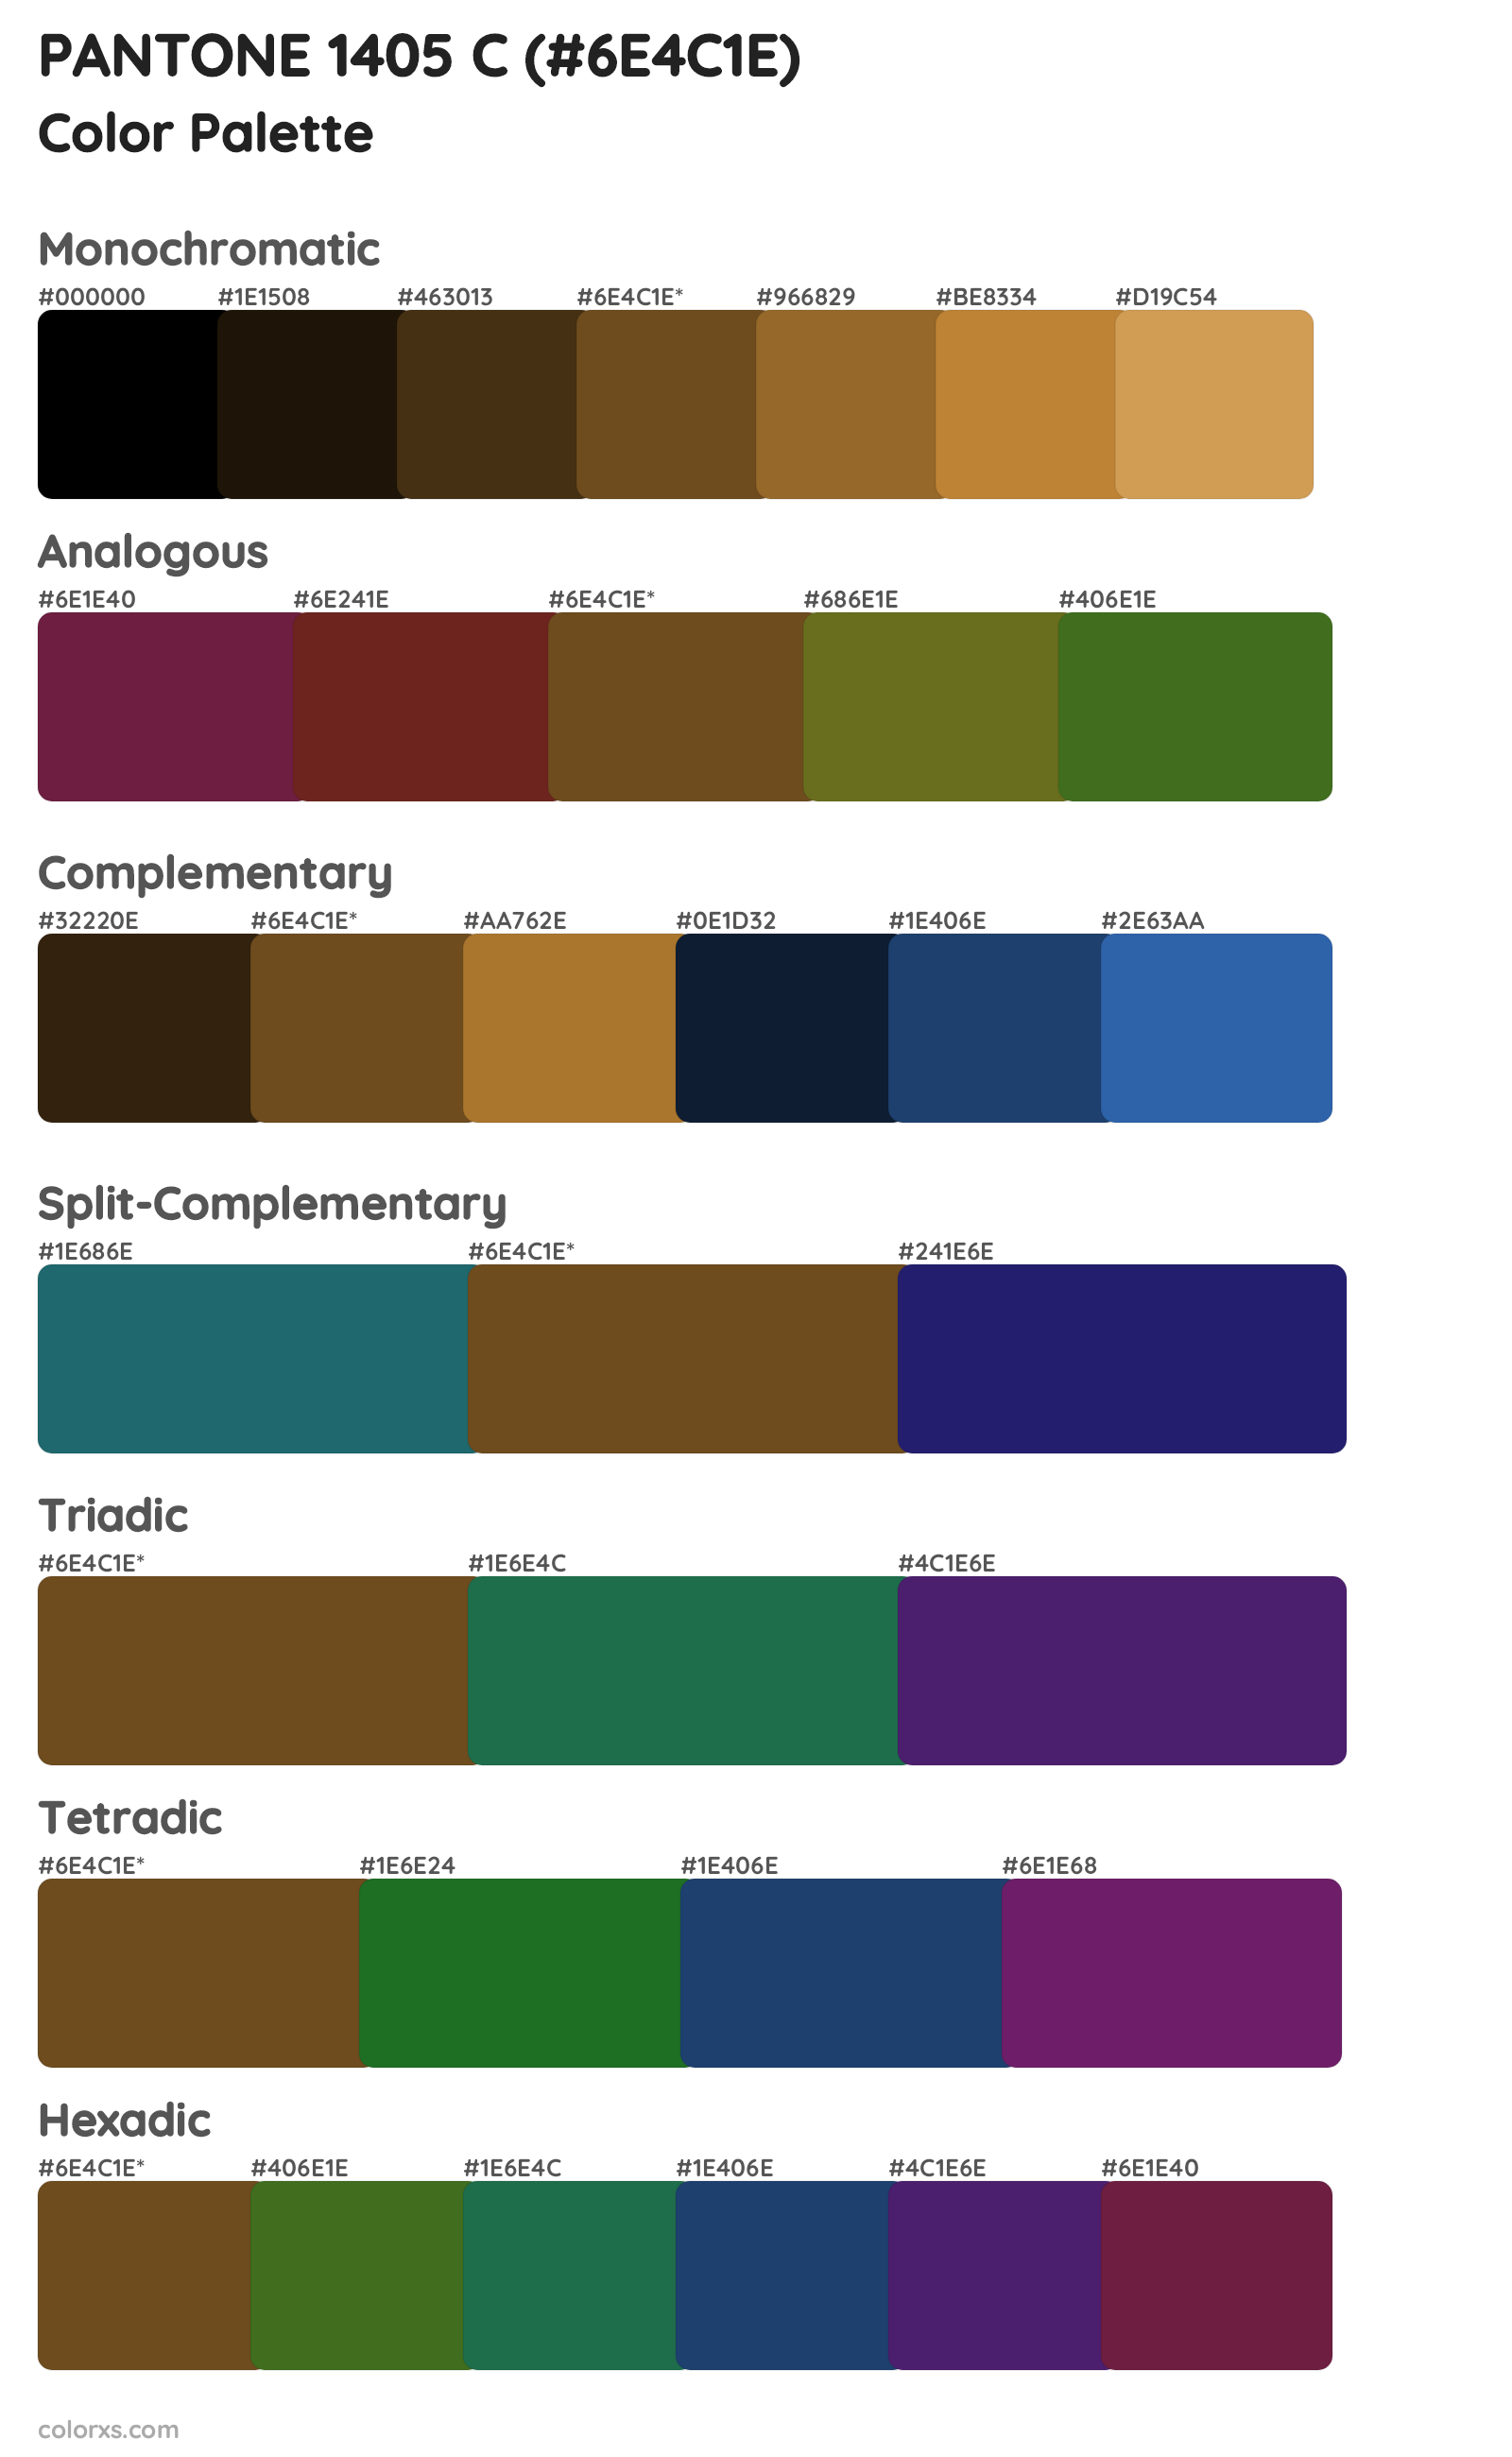 PANTONE 1405 C Color Scheme Palettes